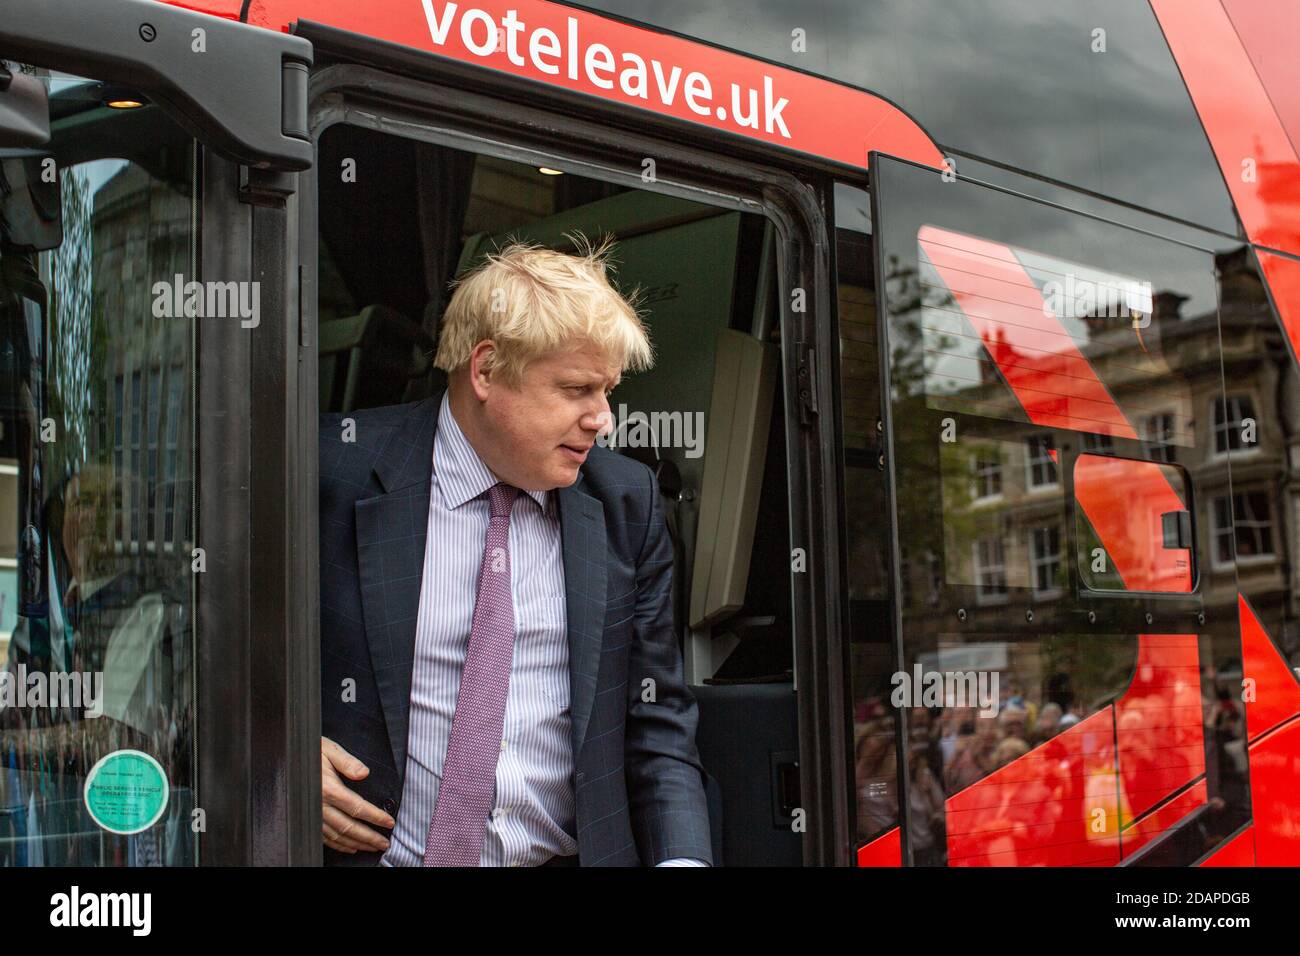 Boris Johnson e il suo Battle Bus sulla campagna referendaria BREXIT a Stafford, Inghilterra. Johnson divenne in seguito primo Ministro con Cummings Foto Stock